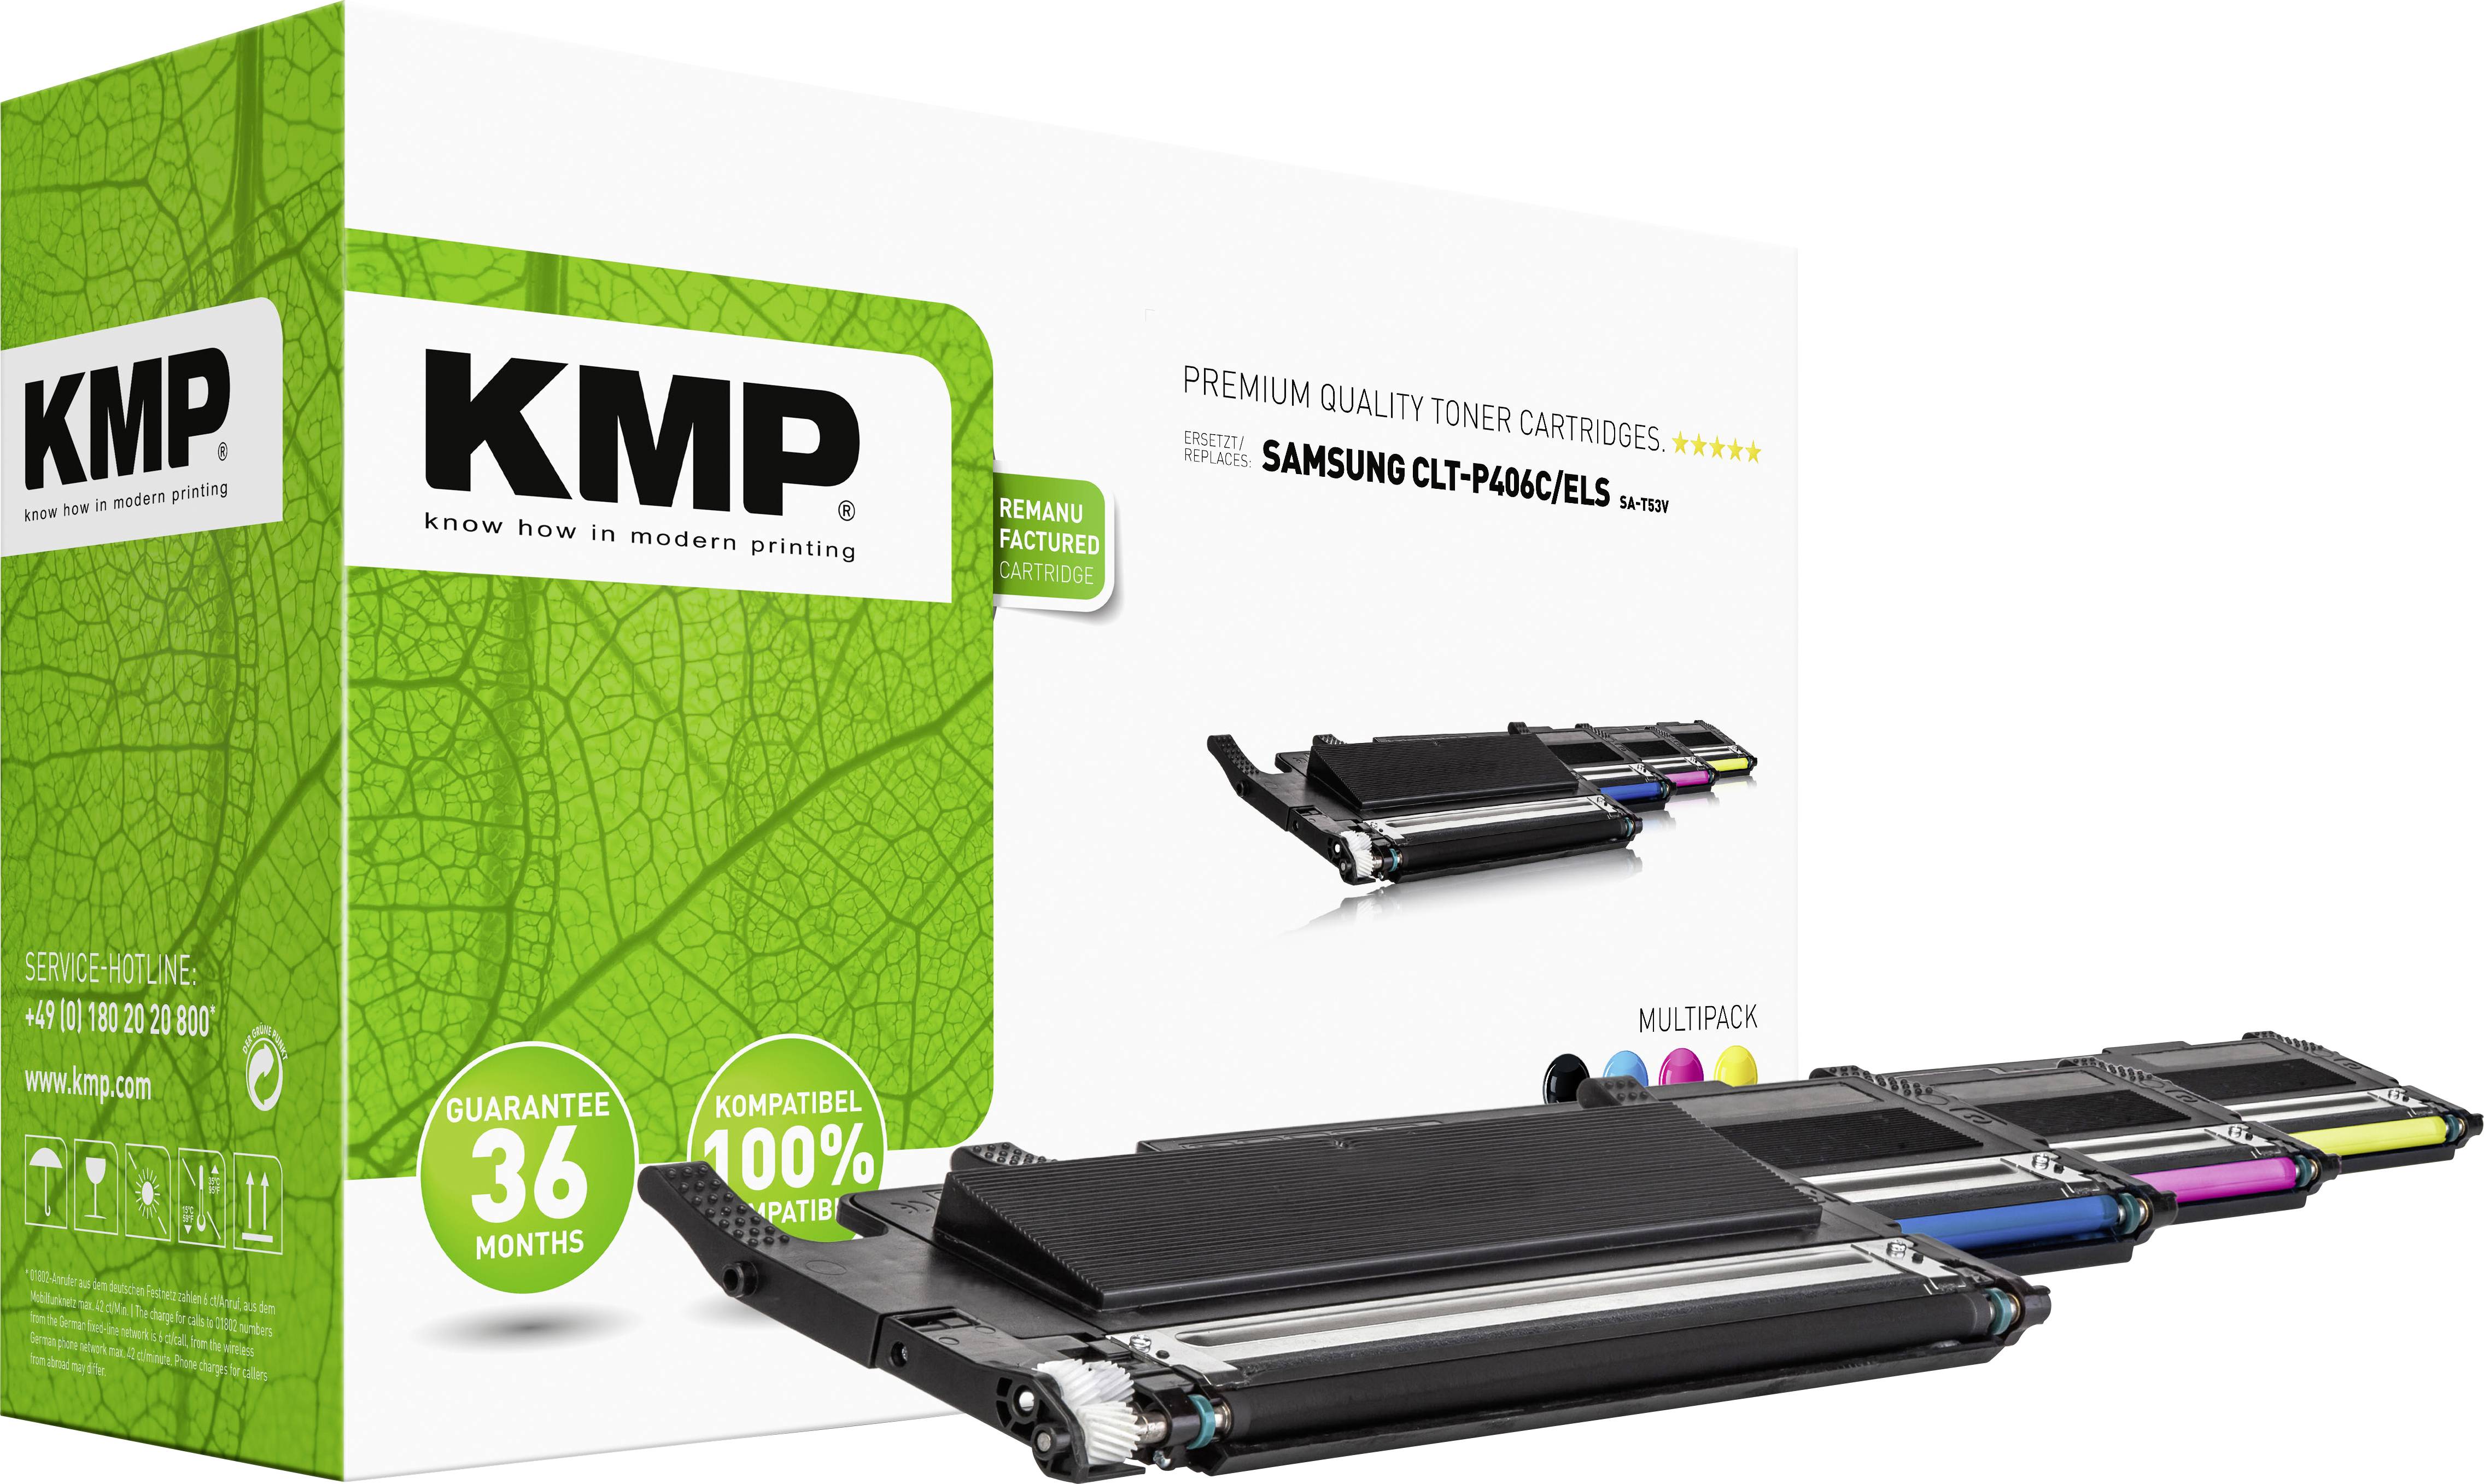 KMP Toner cartridge pack replaced Samsung CLT-P406C, CLT-K406S, CLT-C406S, CLT-M406S, CLT-Y406S Compatible Black, | Conrad.com